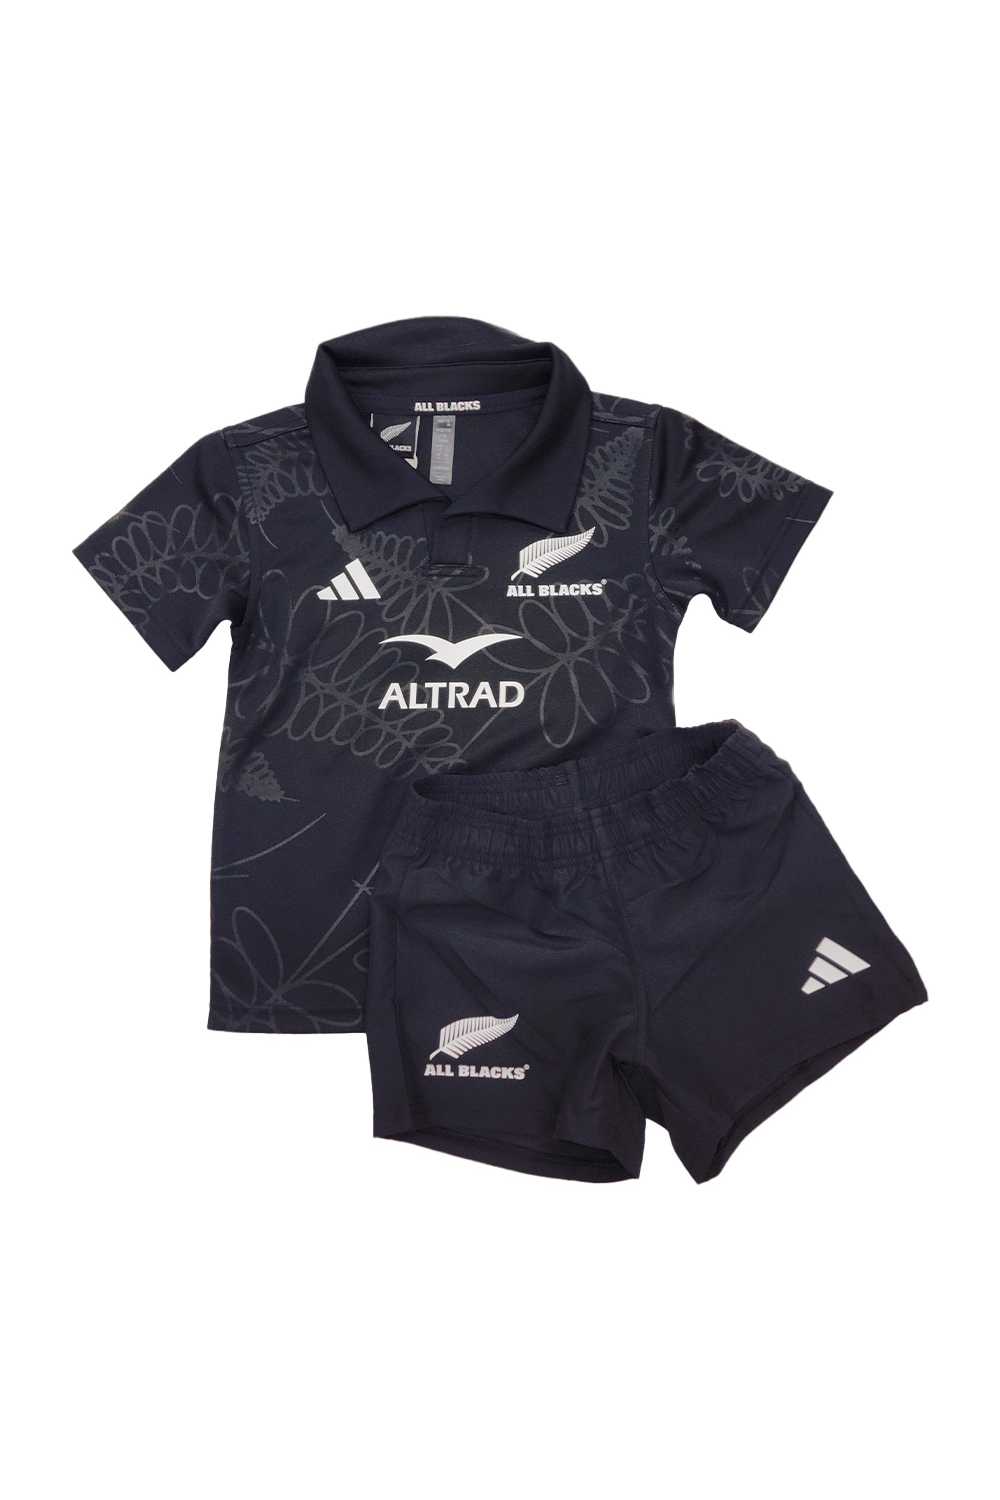 Adidas All Blacks RWC Mini Kit